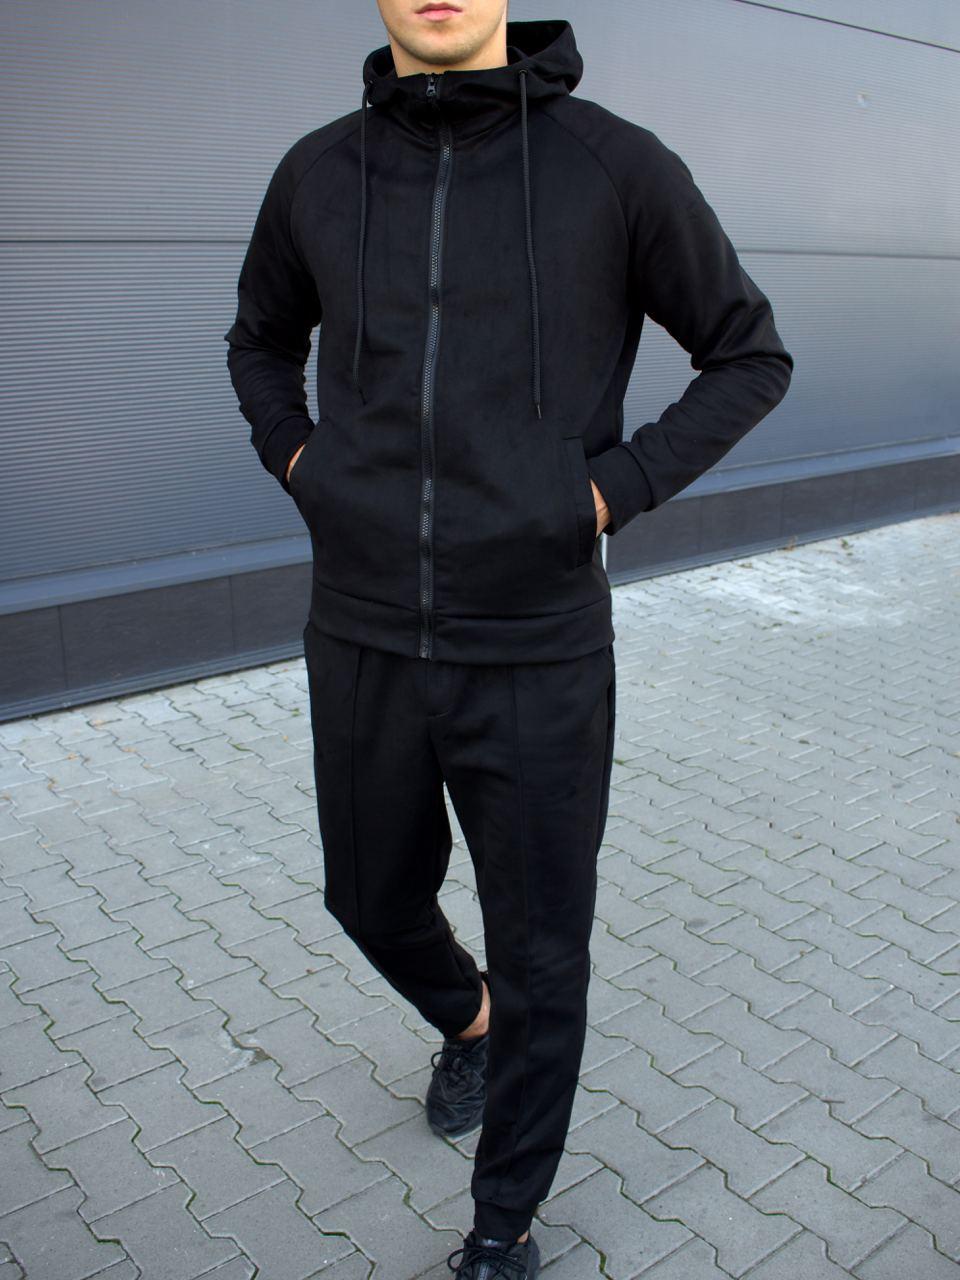 Спортивний костюм чоловічий замшевий чорний весна-осінь кофта з капюшоном Розміри: S, M, L, XL